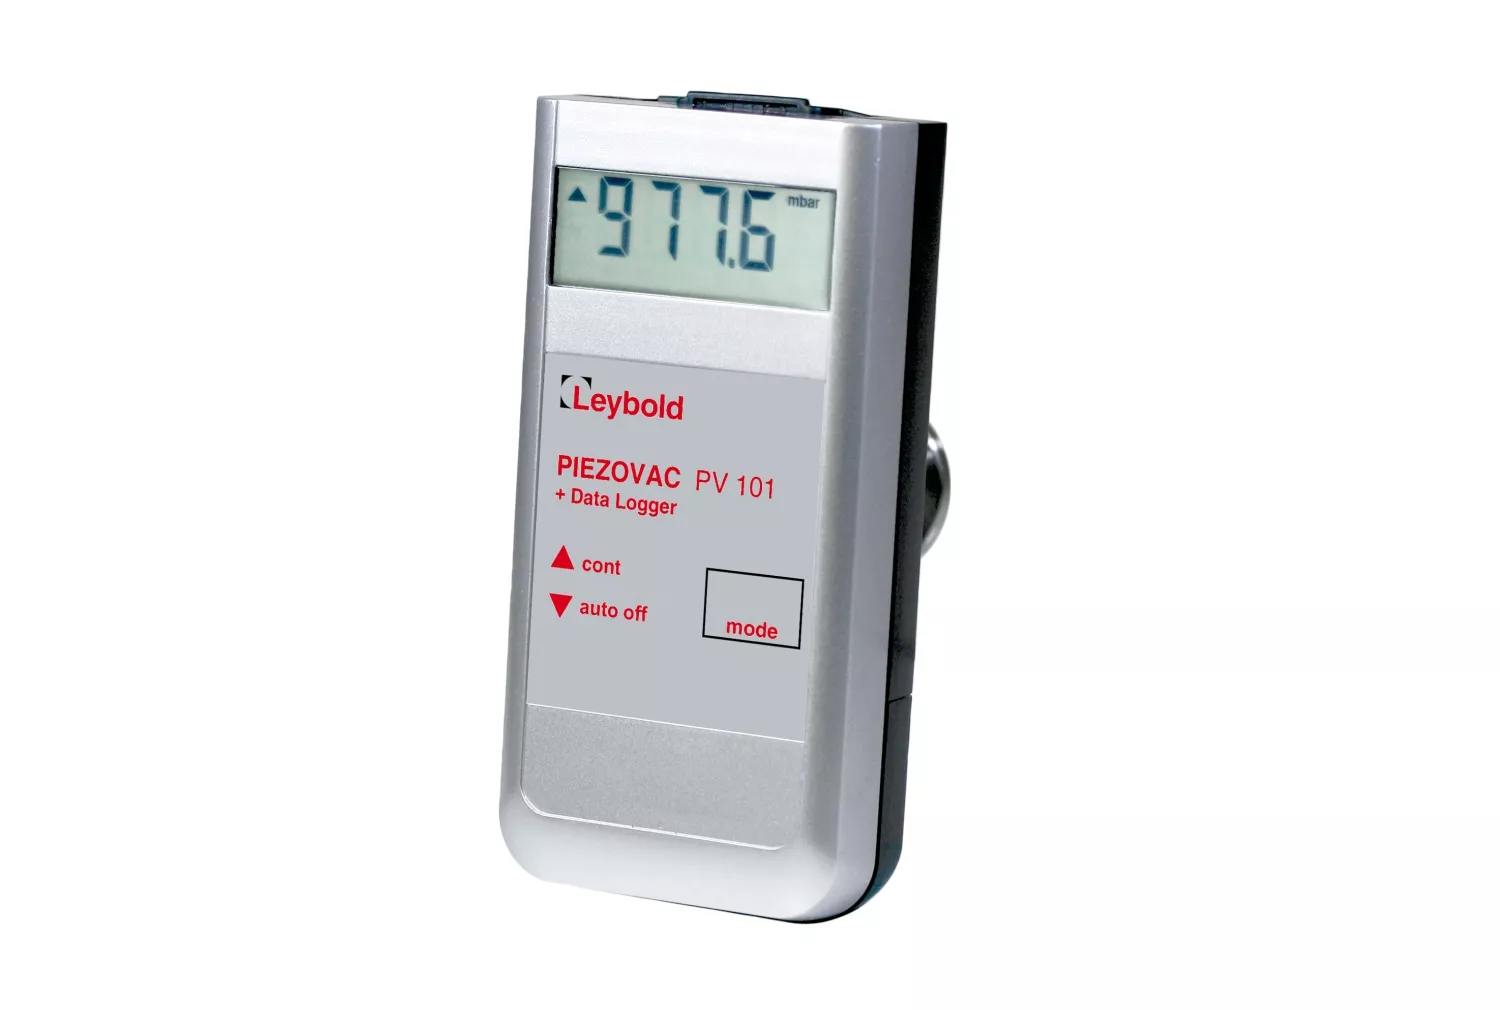 Купить в АО Вакууммаш ✓ Портативный измерительный прибор PIEZOVAC PV 101 Leybold по цене производителя